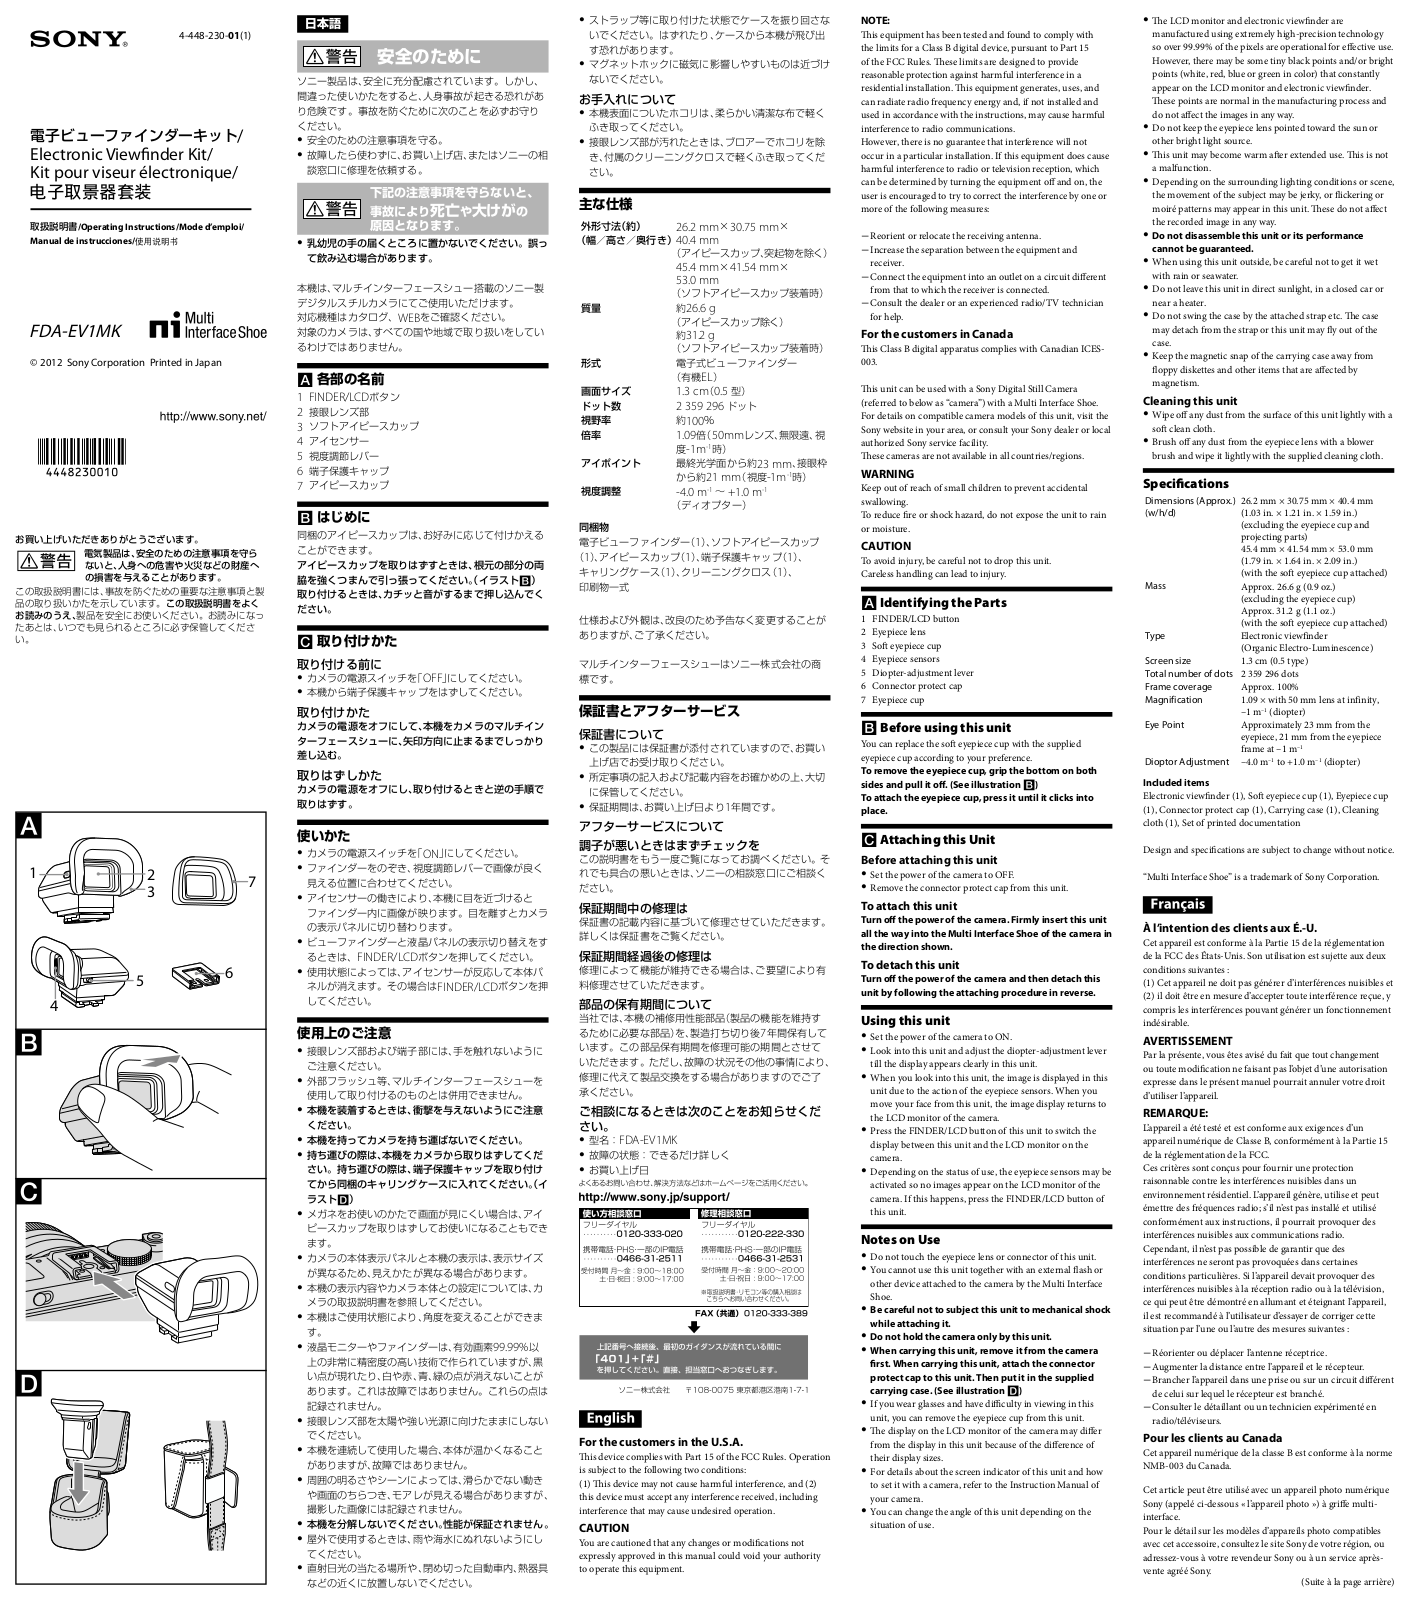 Sony FDA-EV1MK User Manual